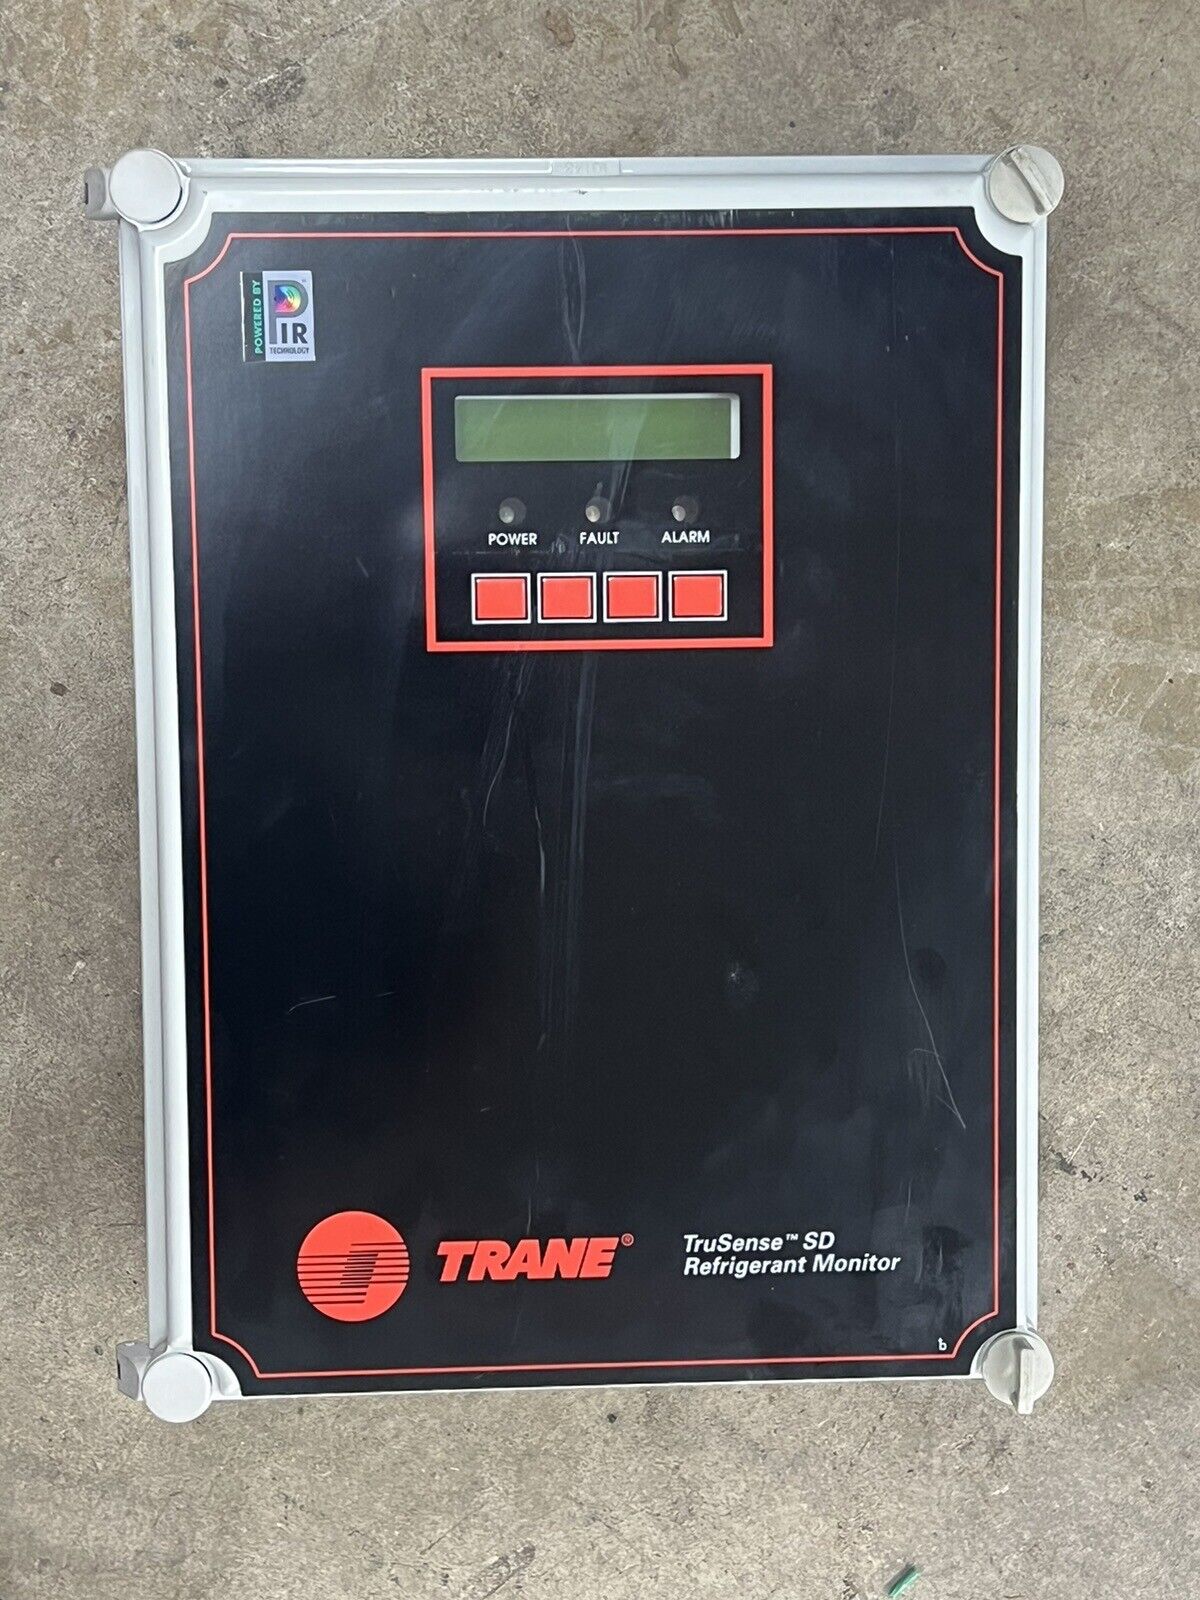 Trane TruSense SD MON00024 Refrigerant Monitor 15 Amp 100-240 Volt 50/60Hz